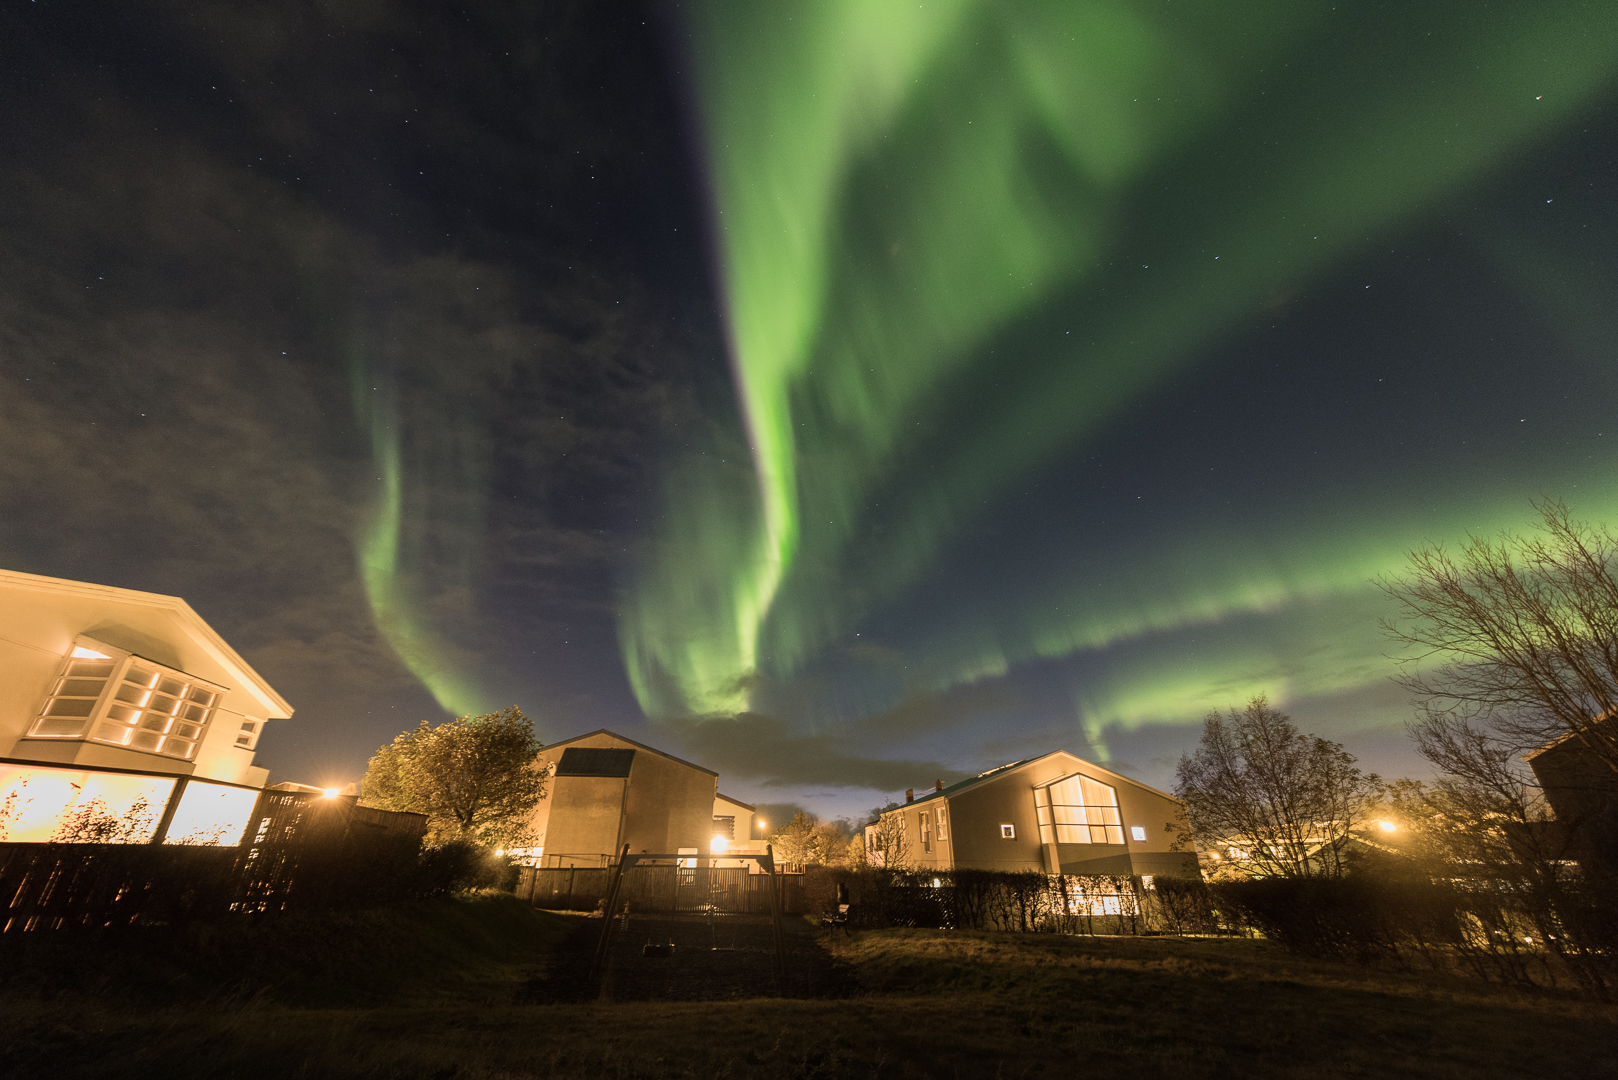 Northern lights over Hafnarfjörður, Iceland, October 2018. Credit: Sævar Helgi Bragason